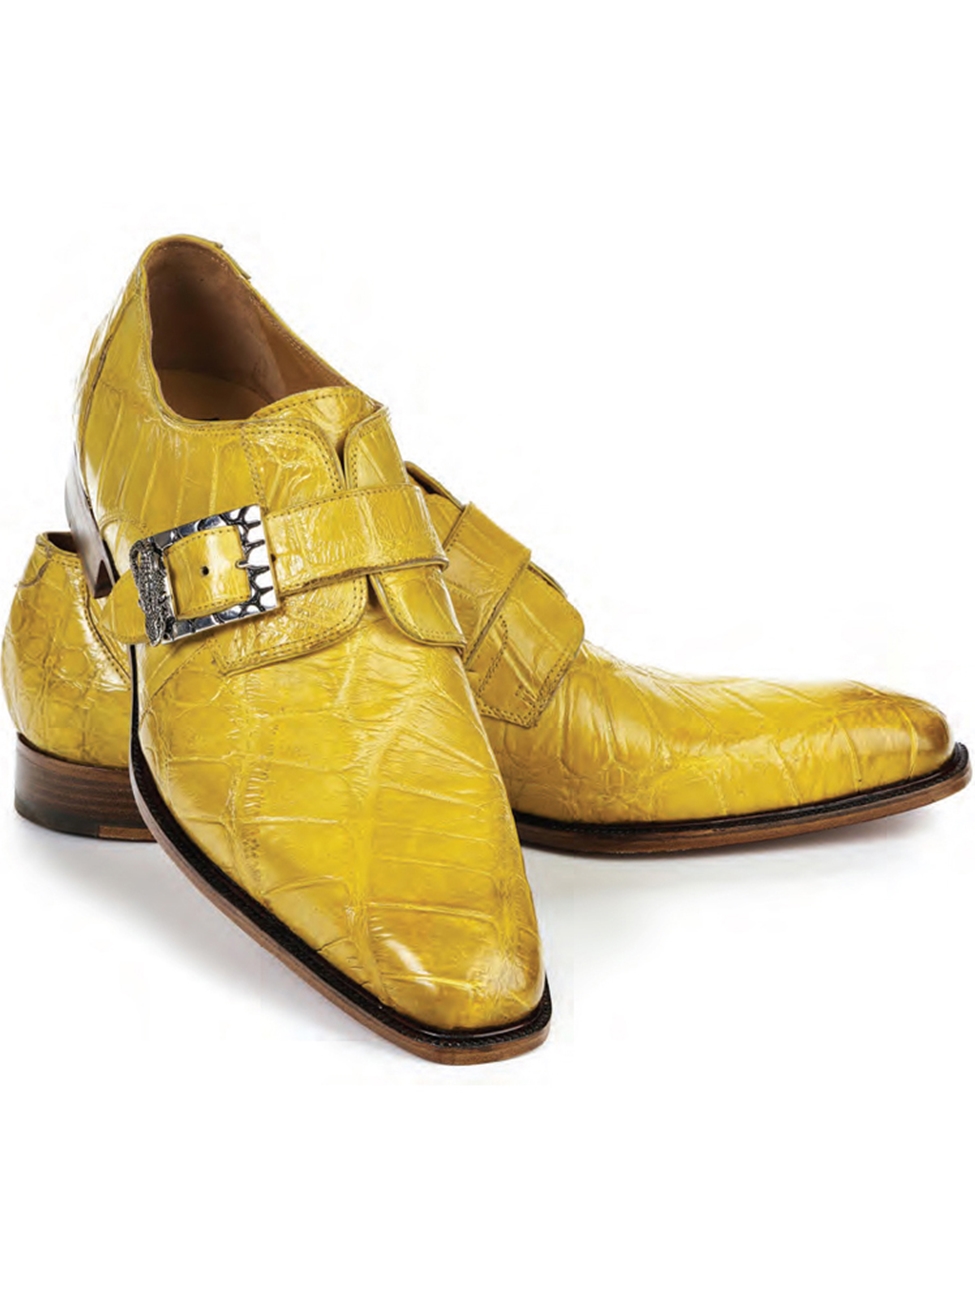 Yellow Alligator Single Monk Strap Men's Shoe | Mauri Monk Strap Shoes ...